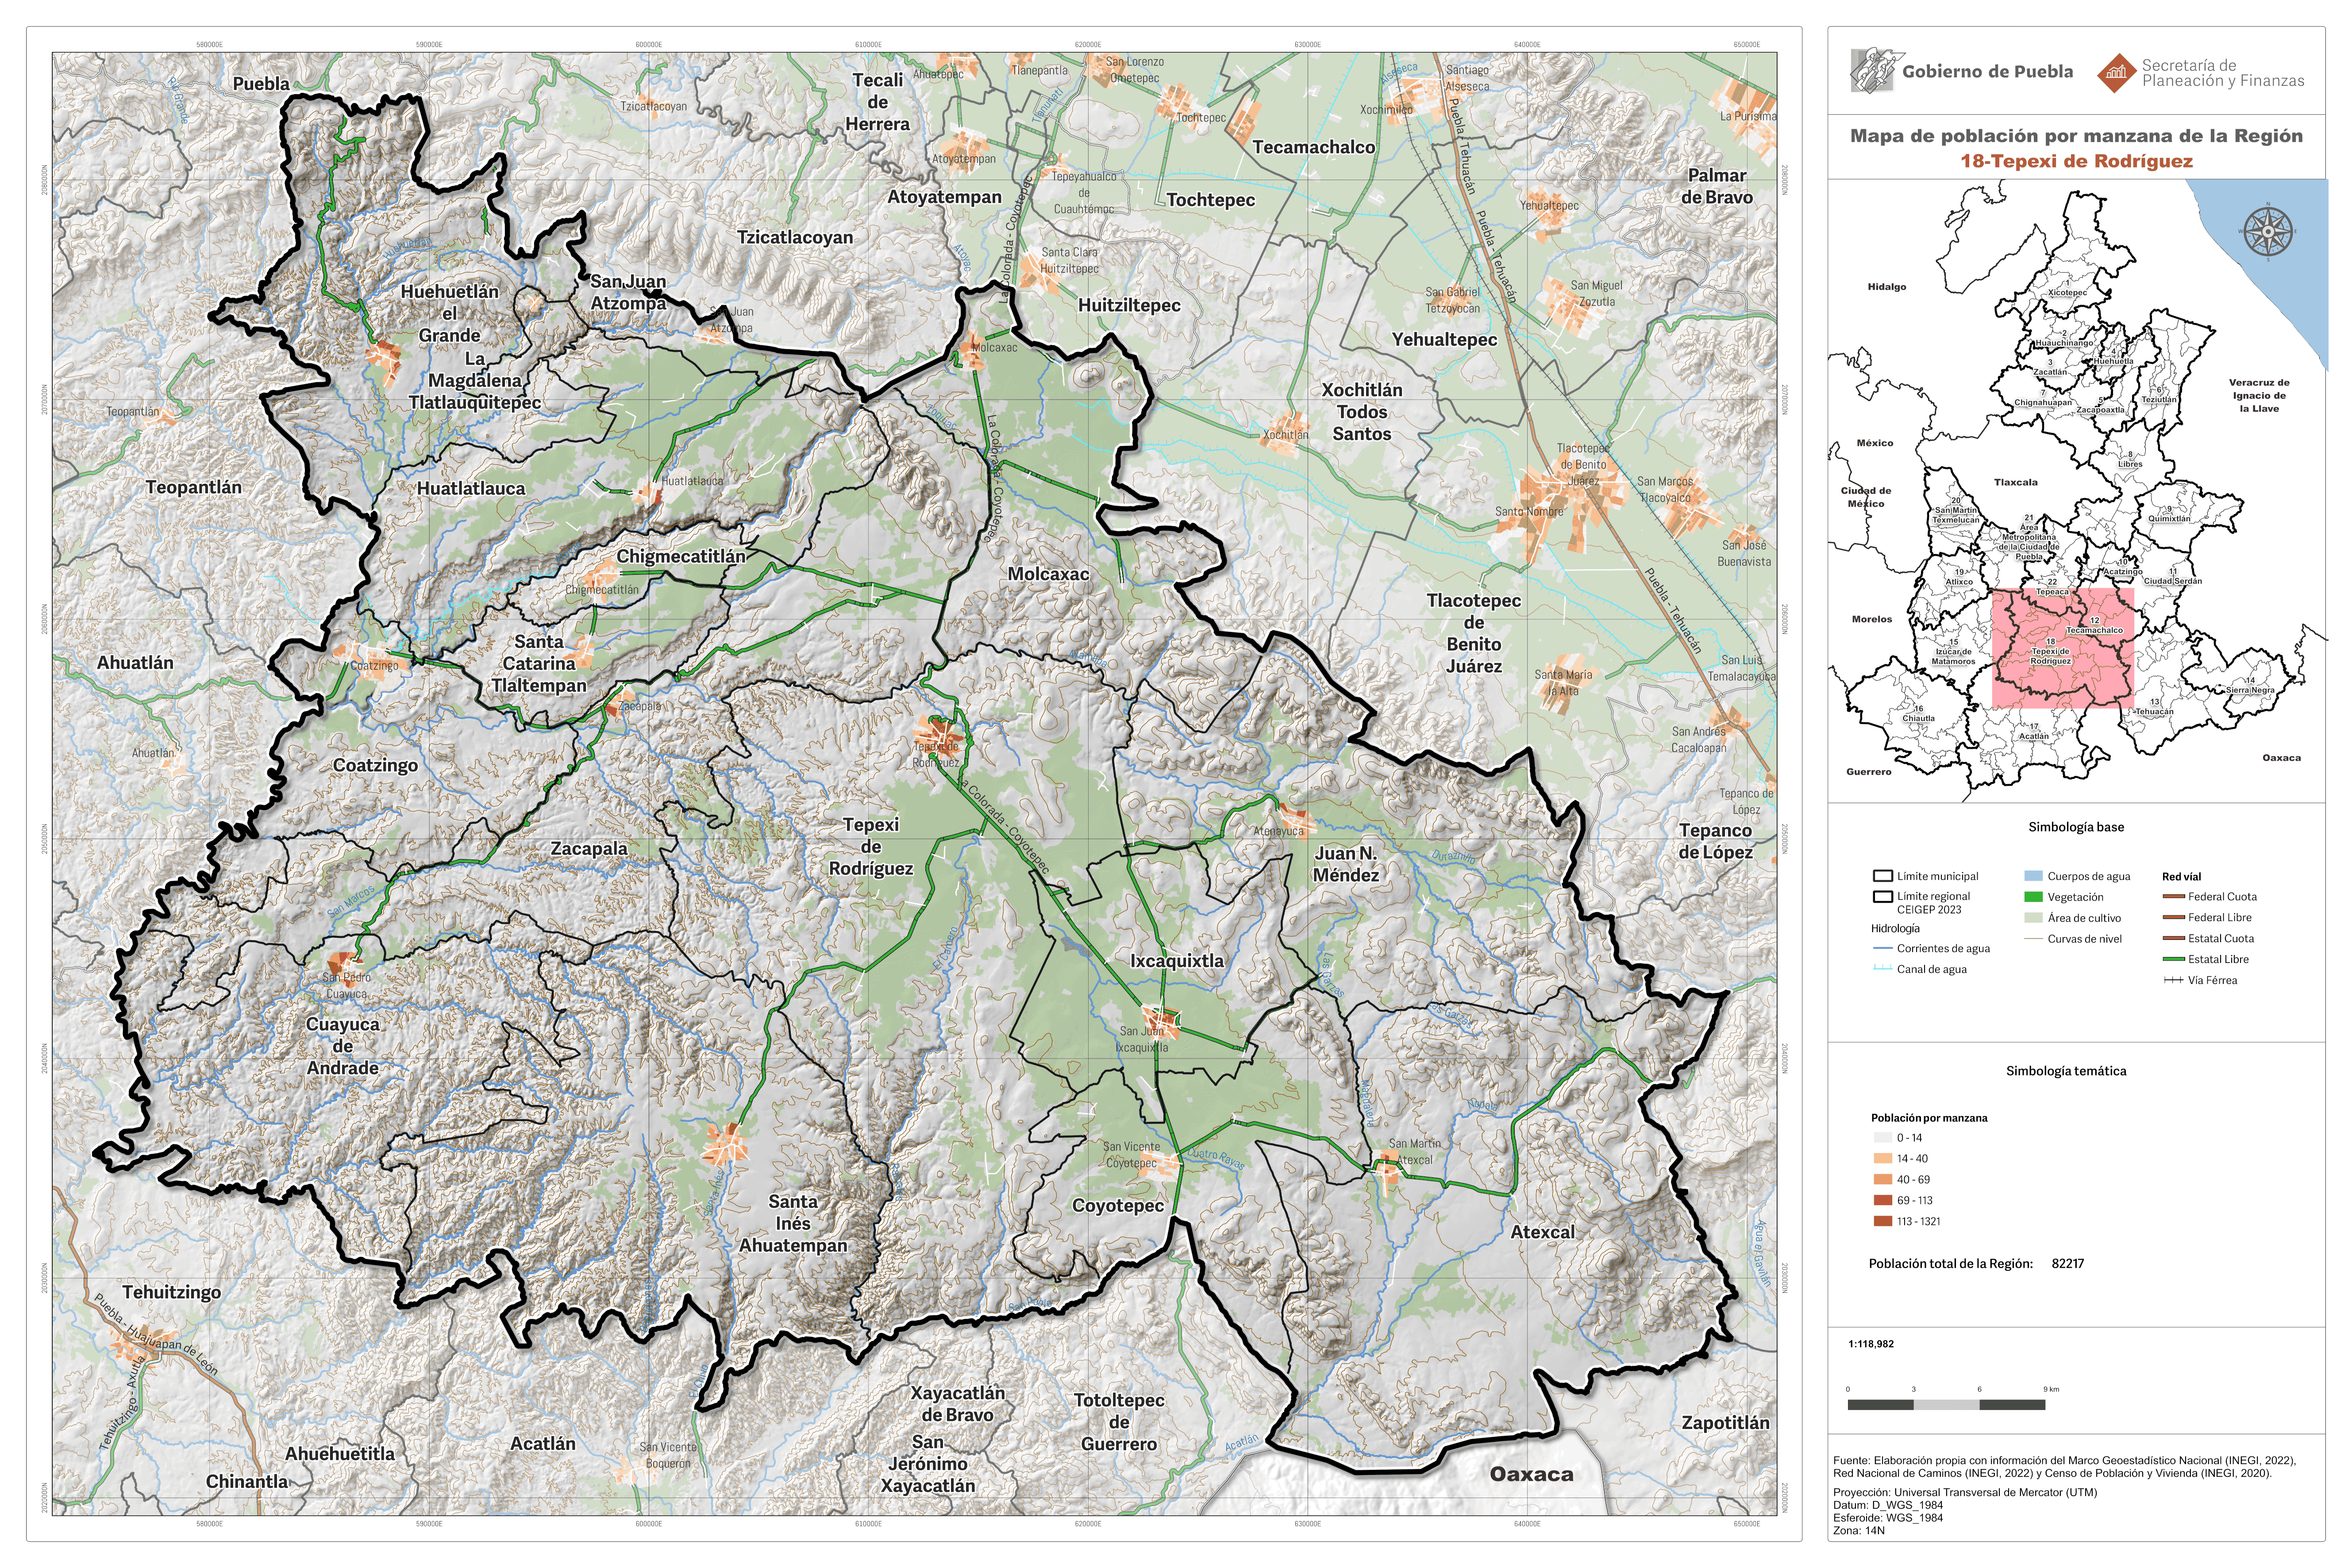 Biblioteca de Mapas - Población por manzana de la región 18-Tepexi de Rodríguez